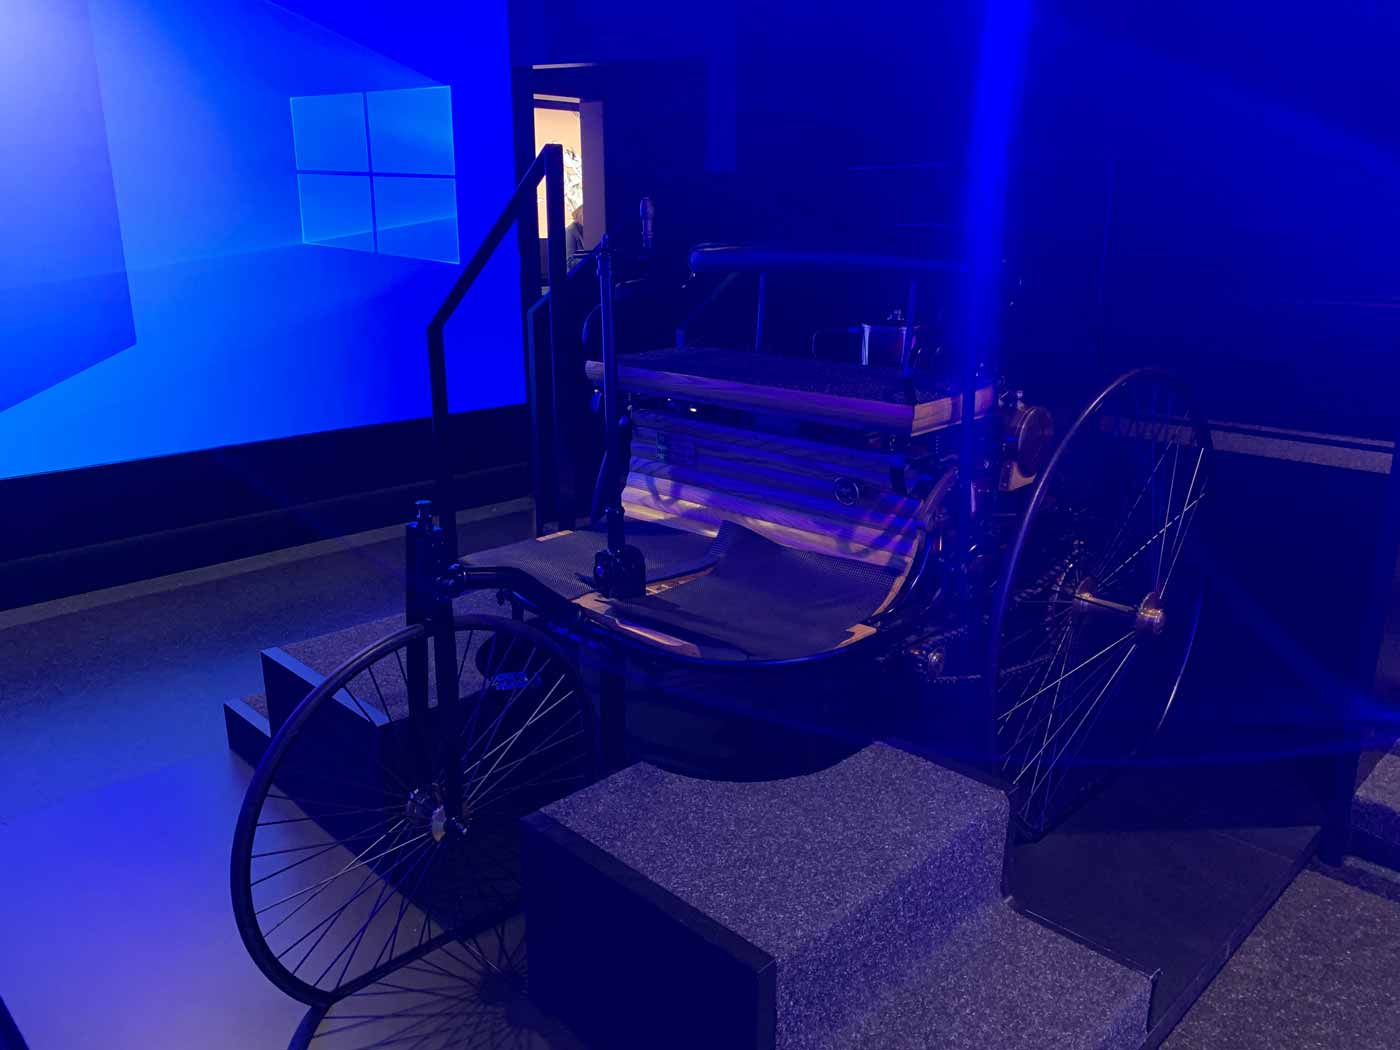 Ausstellungsraum mit blauer Projektionswand und Modell eines Automobils